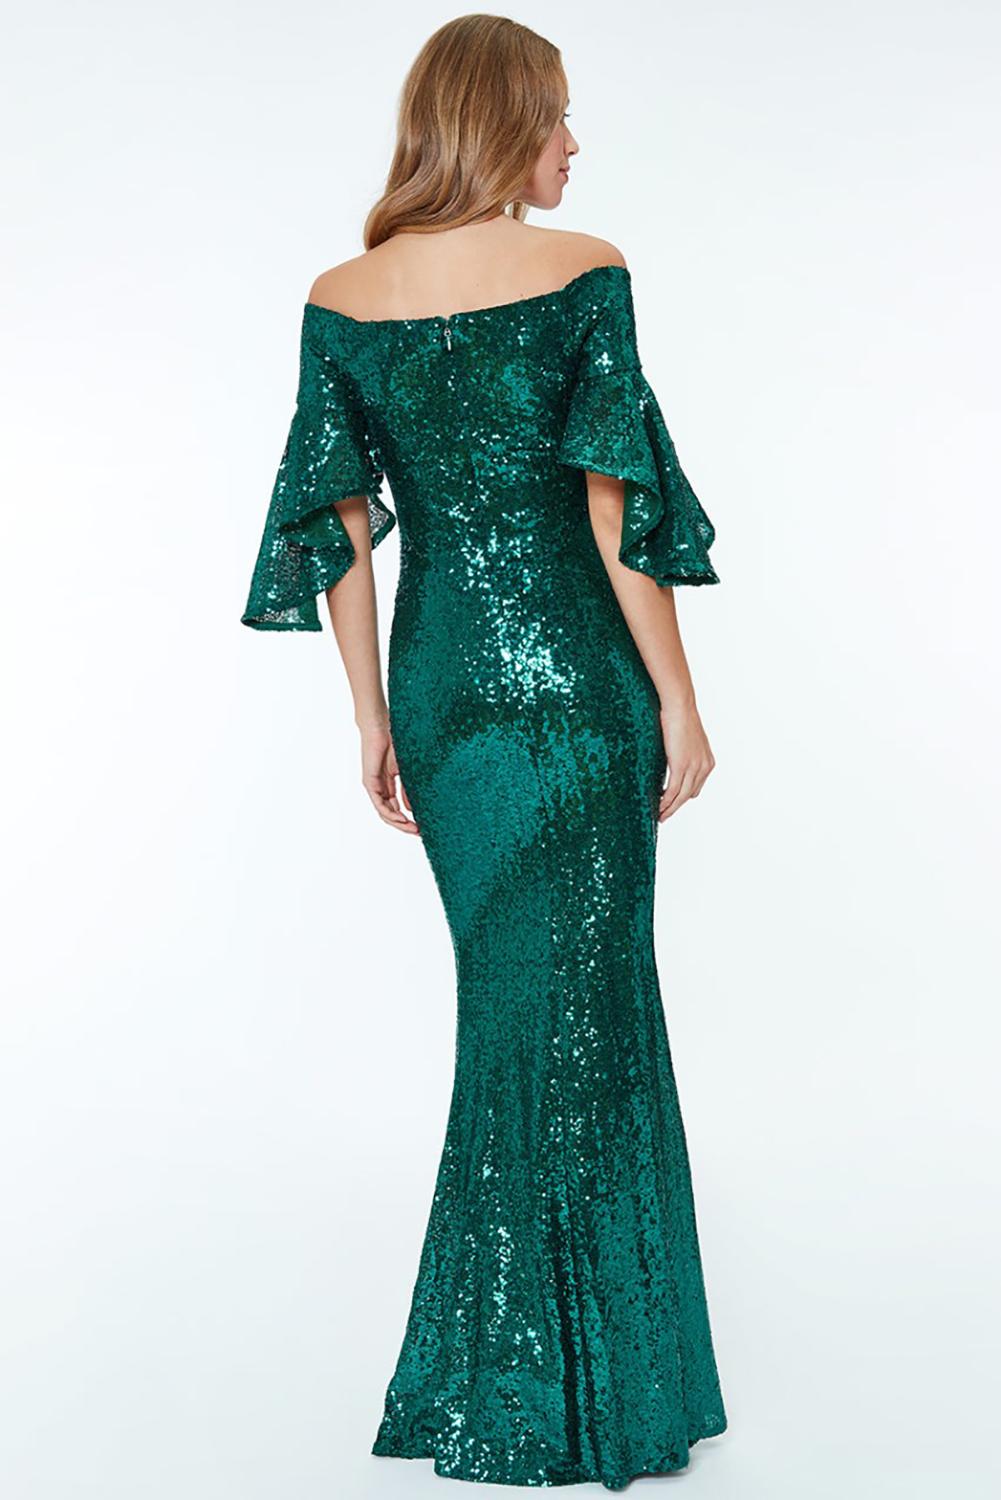 Green Off The Shoulder Sequined Maxi Dress Sequin Dresses JT's Designer Fashion